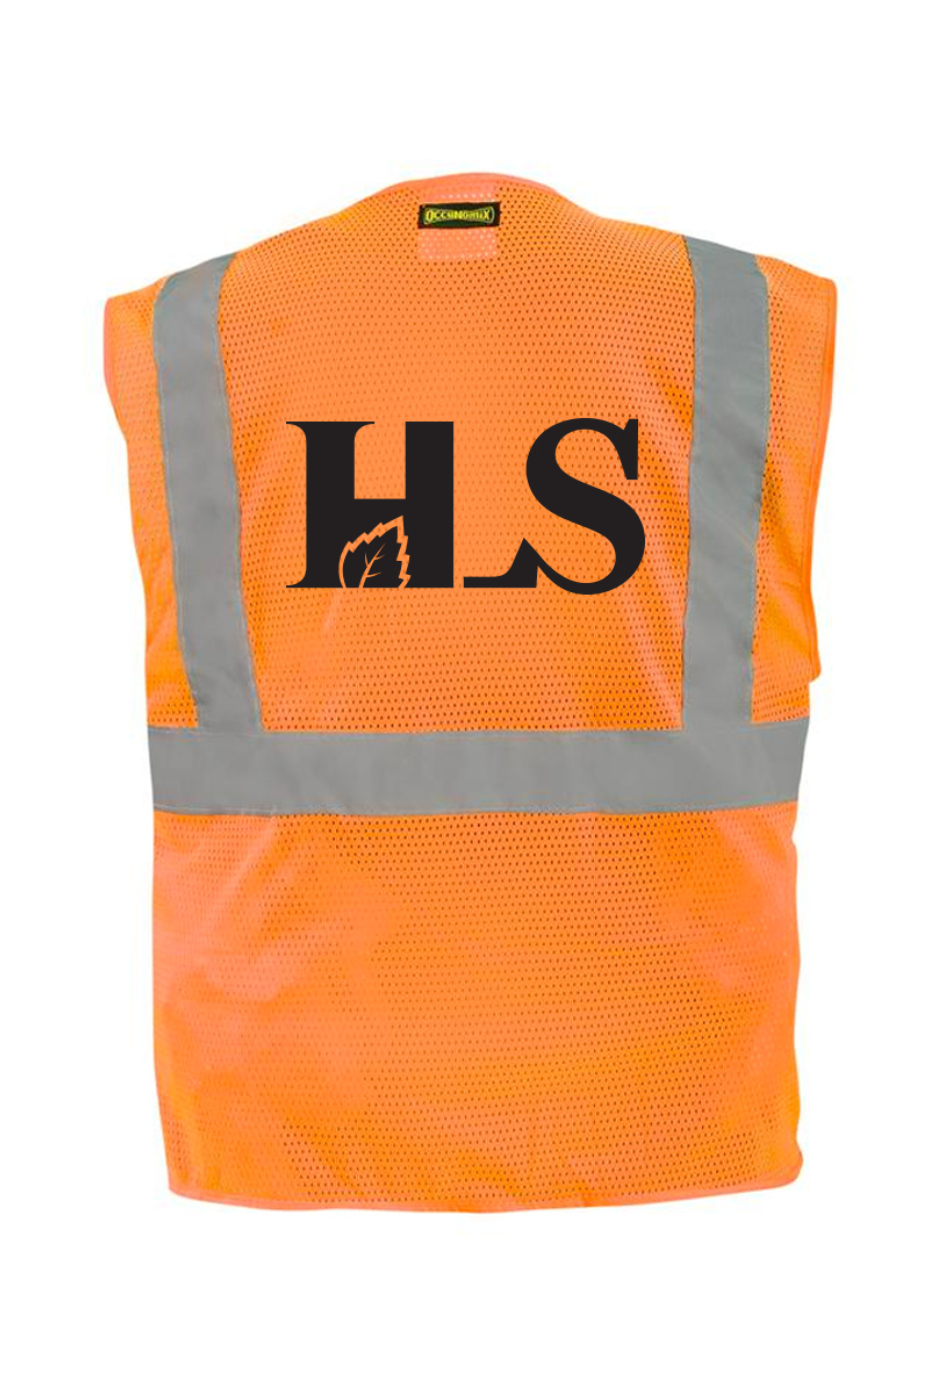 HLS Safety Vests With Badge Pocket